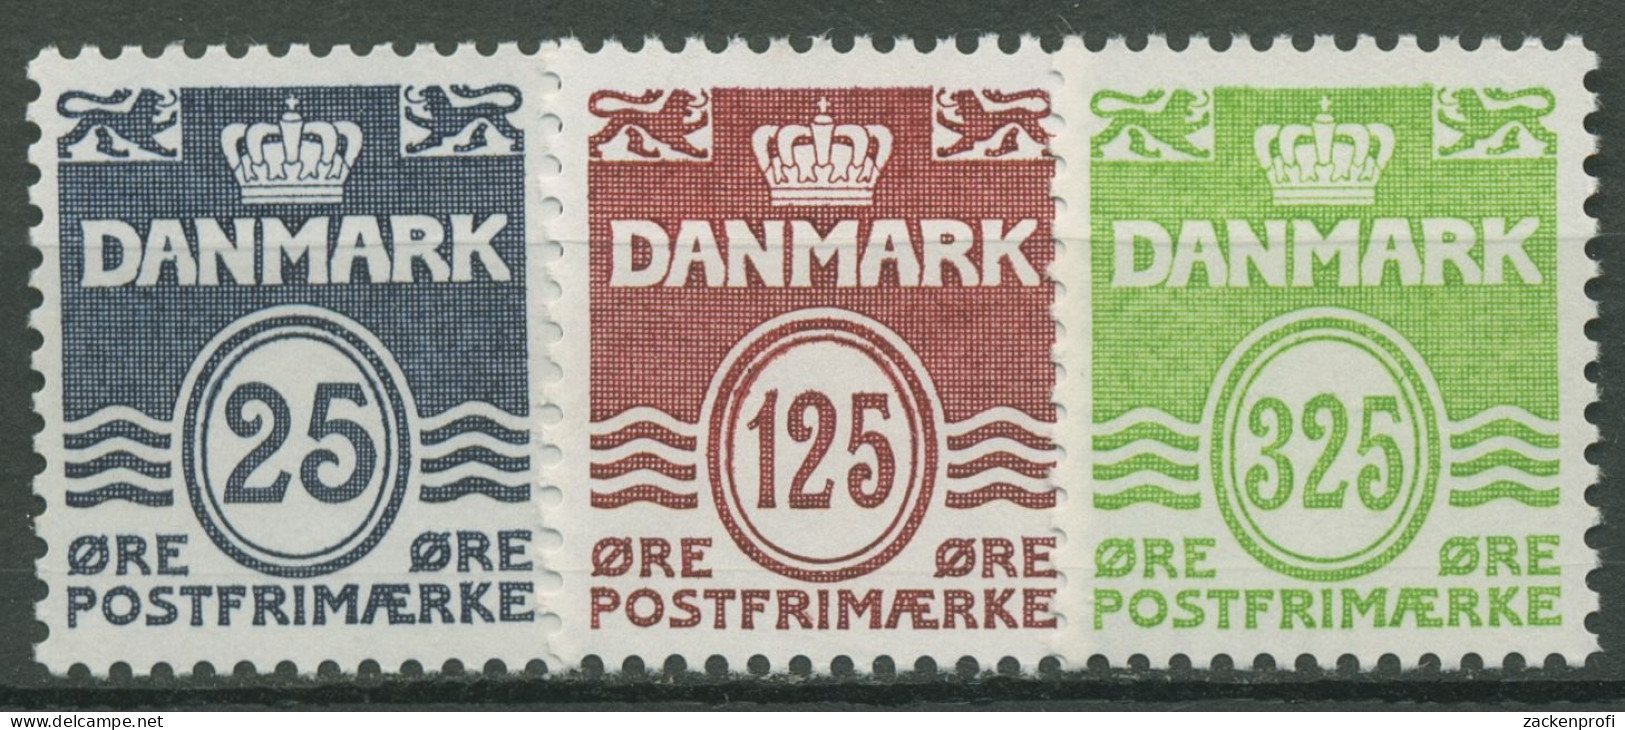 Dänemark 1990 Freimarken Wellenlinien 963/65 Postfrisch - Ongebruikt